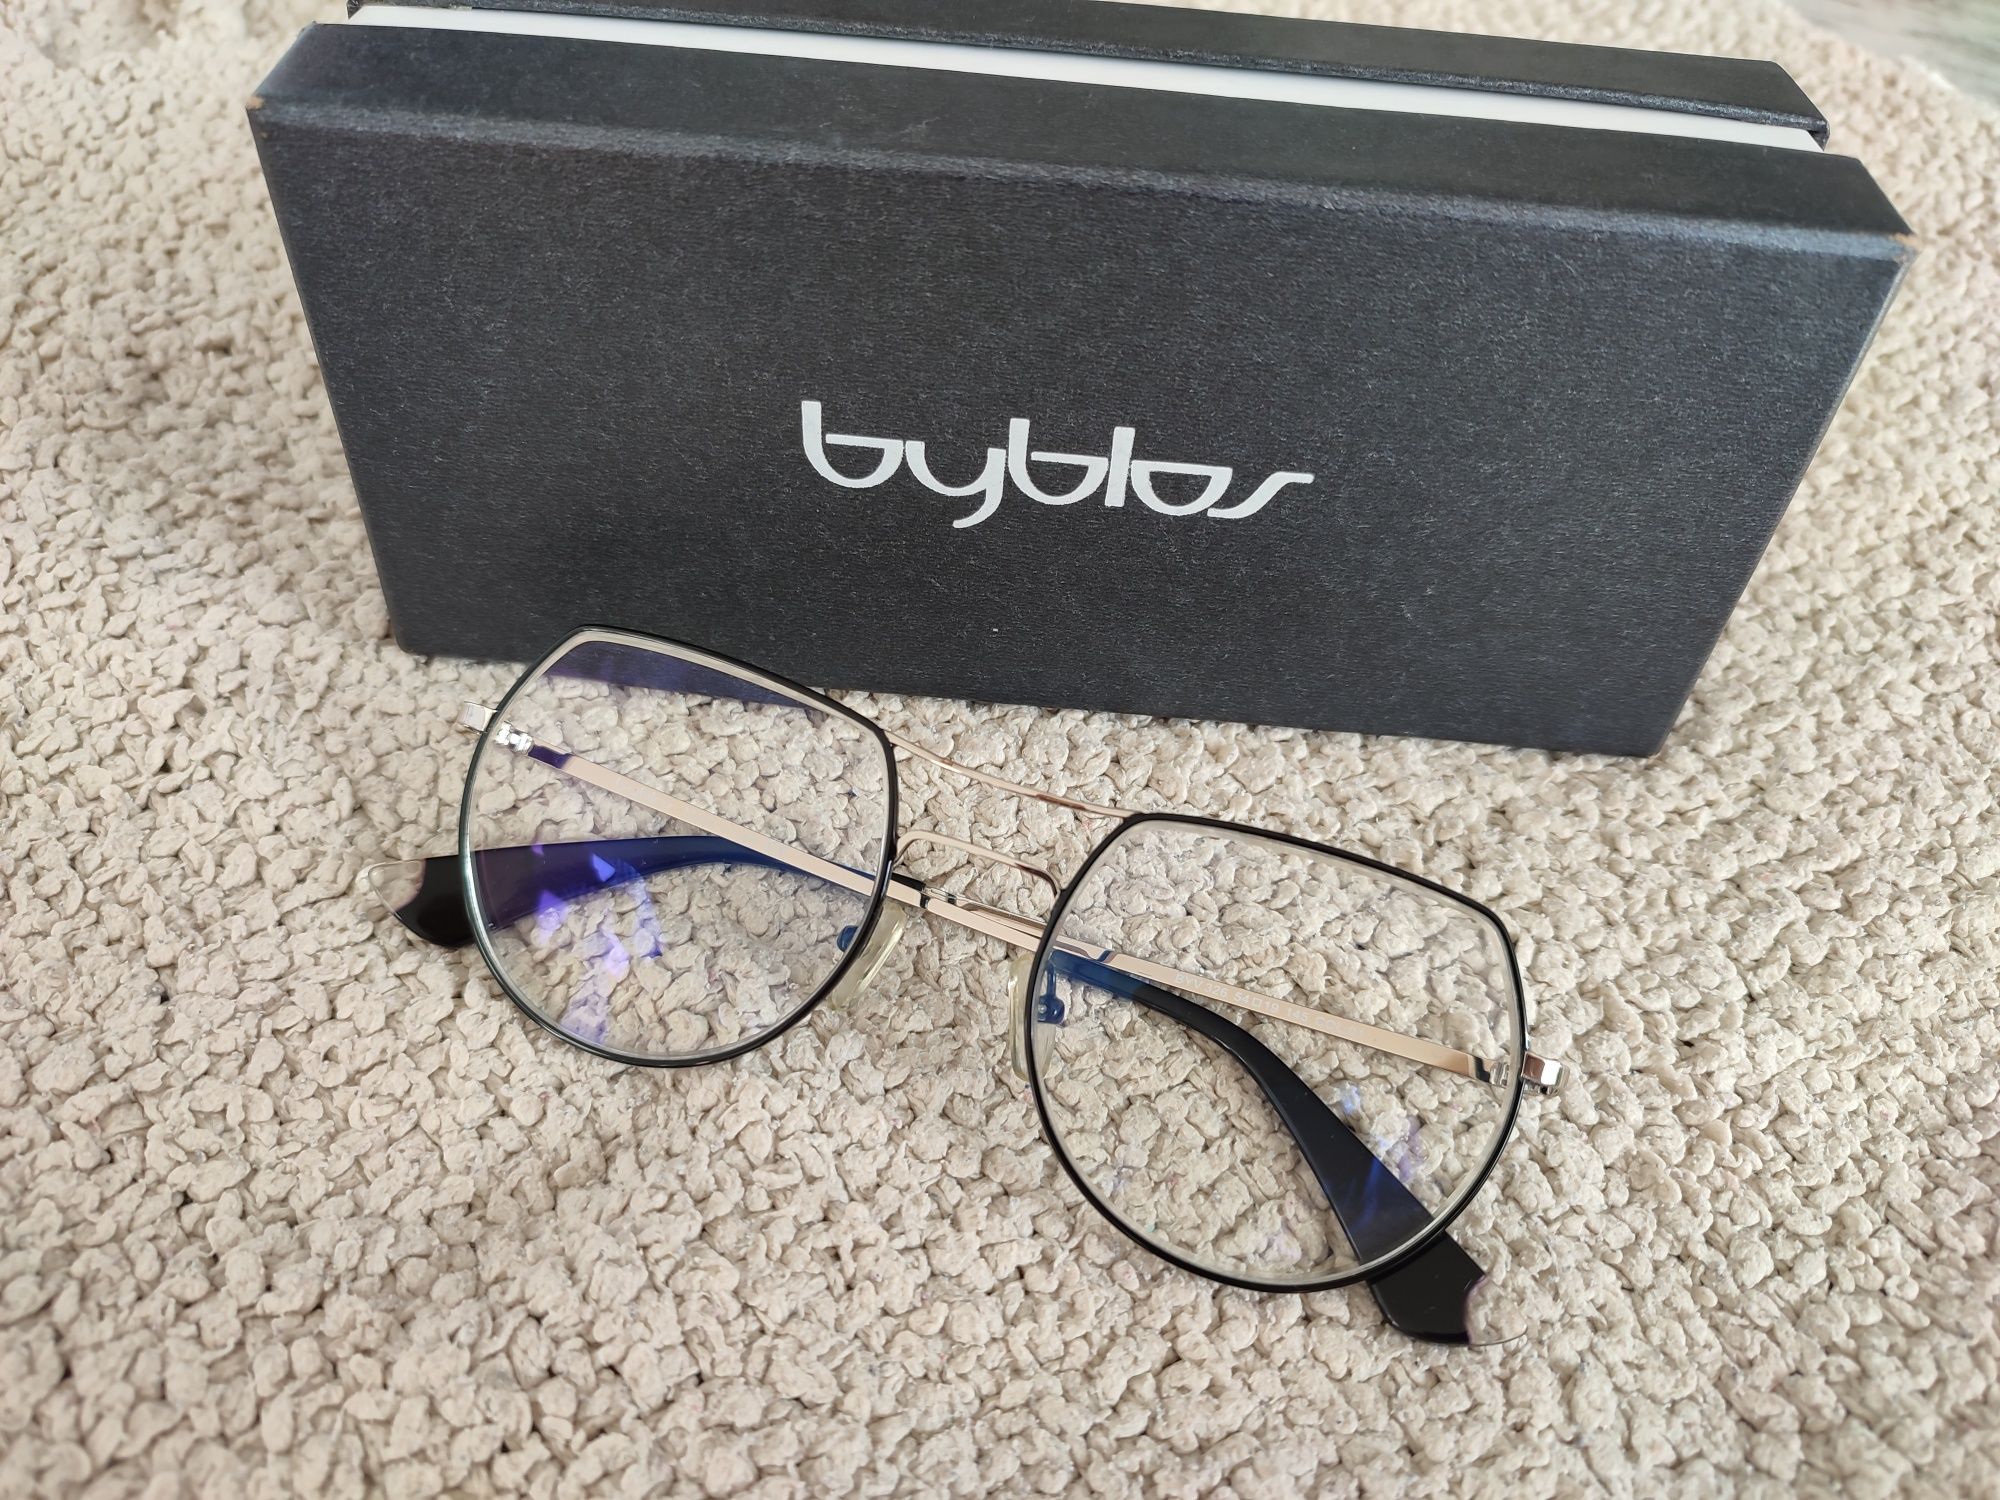 Okulary, oprawki okularowe, ramki do okularów Byblos